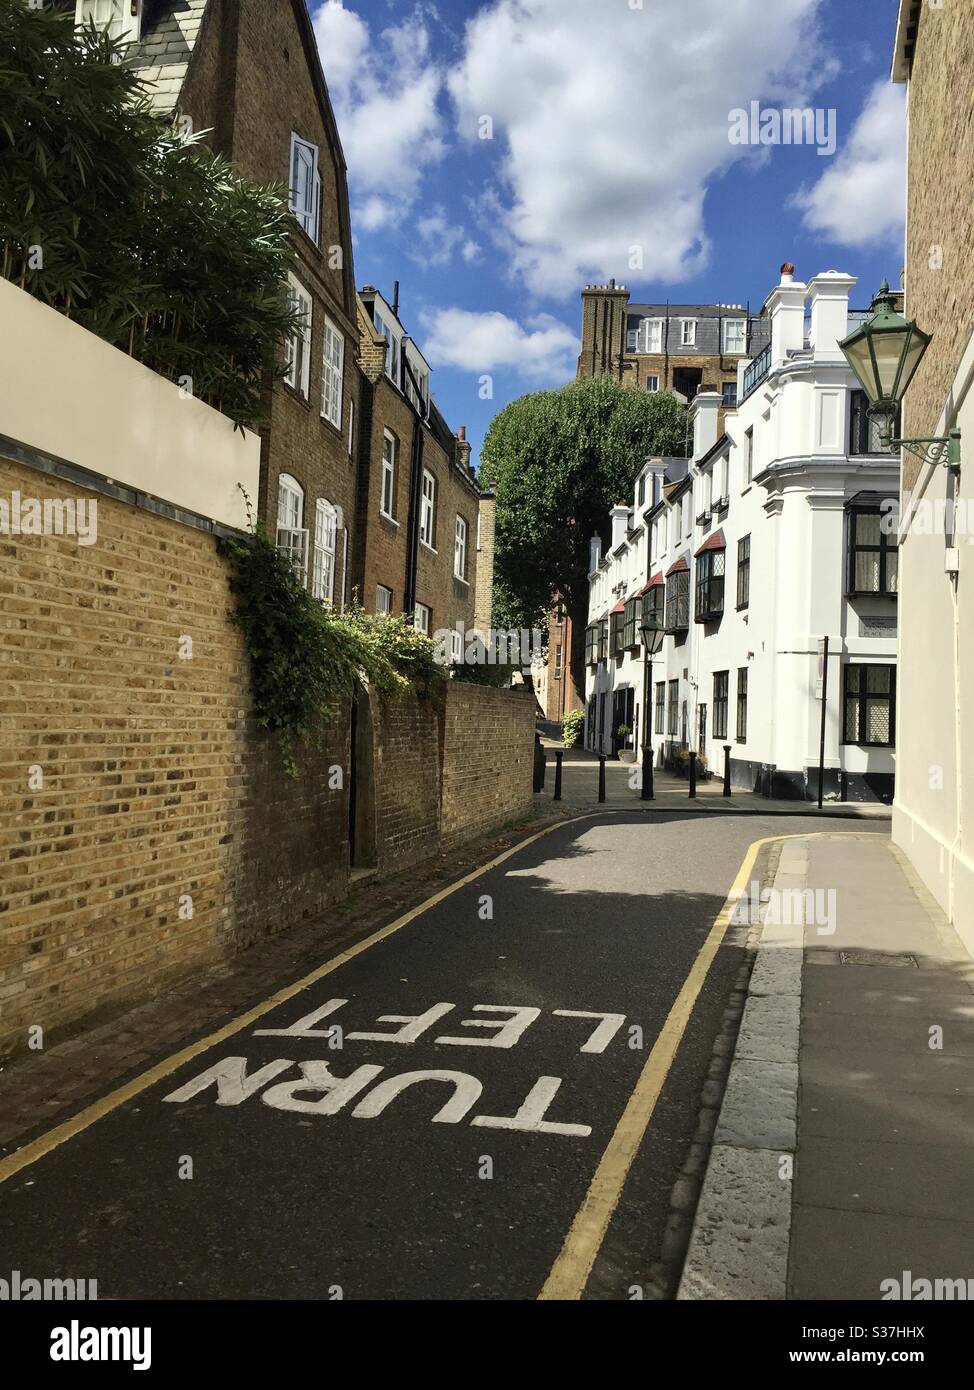 Svolta a sinistra scritta sul terreno della tipica strada londinese in un quartiere ricco a causa del traffico a sinistra Foto Stock